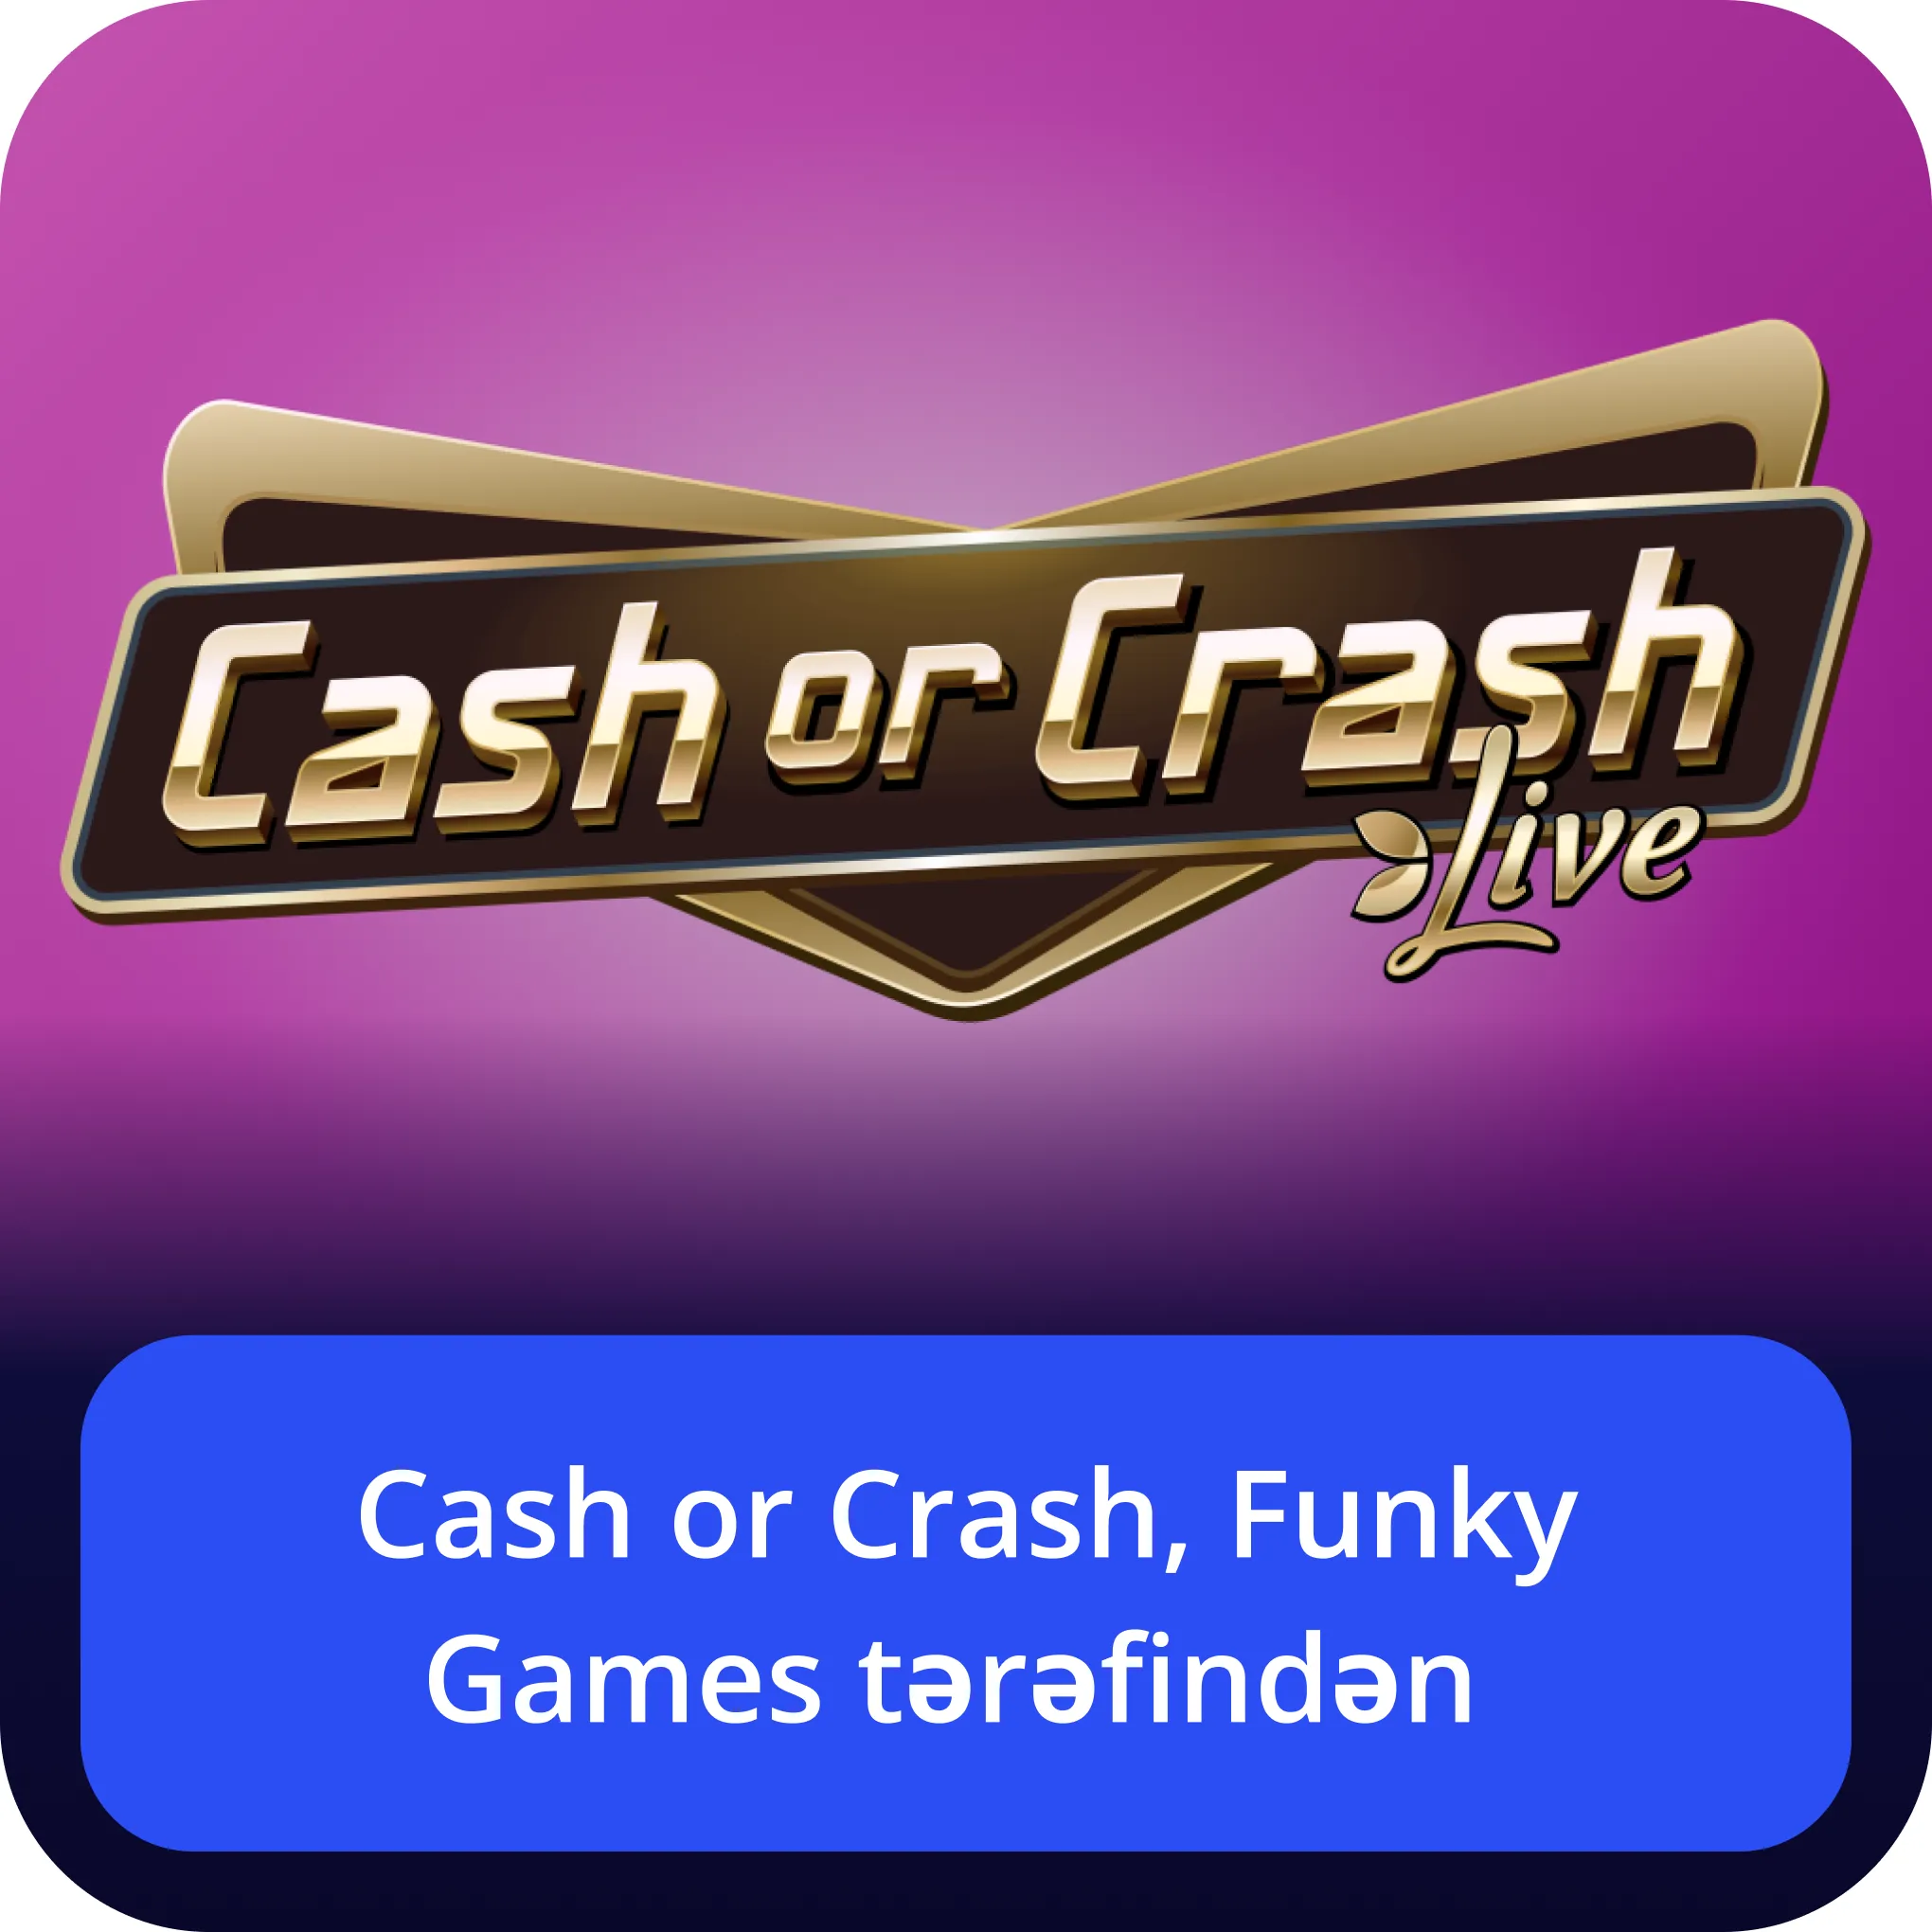 Cash or Crash Funky Games